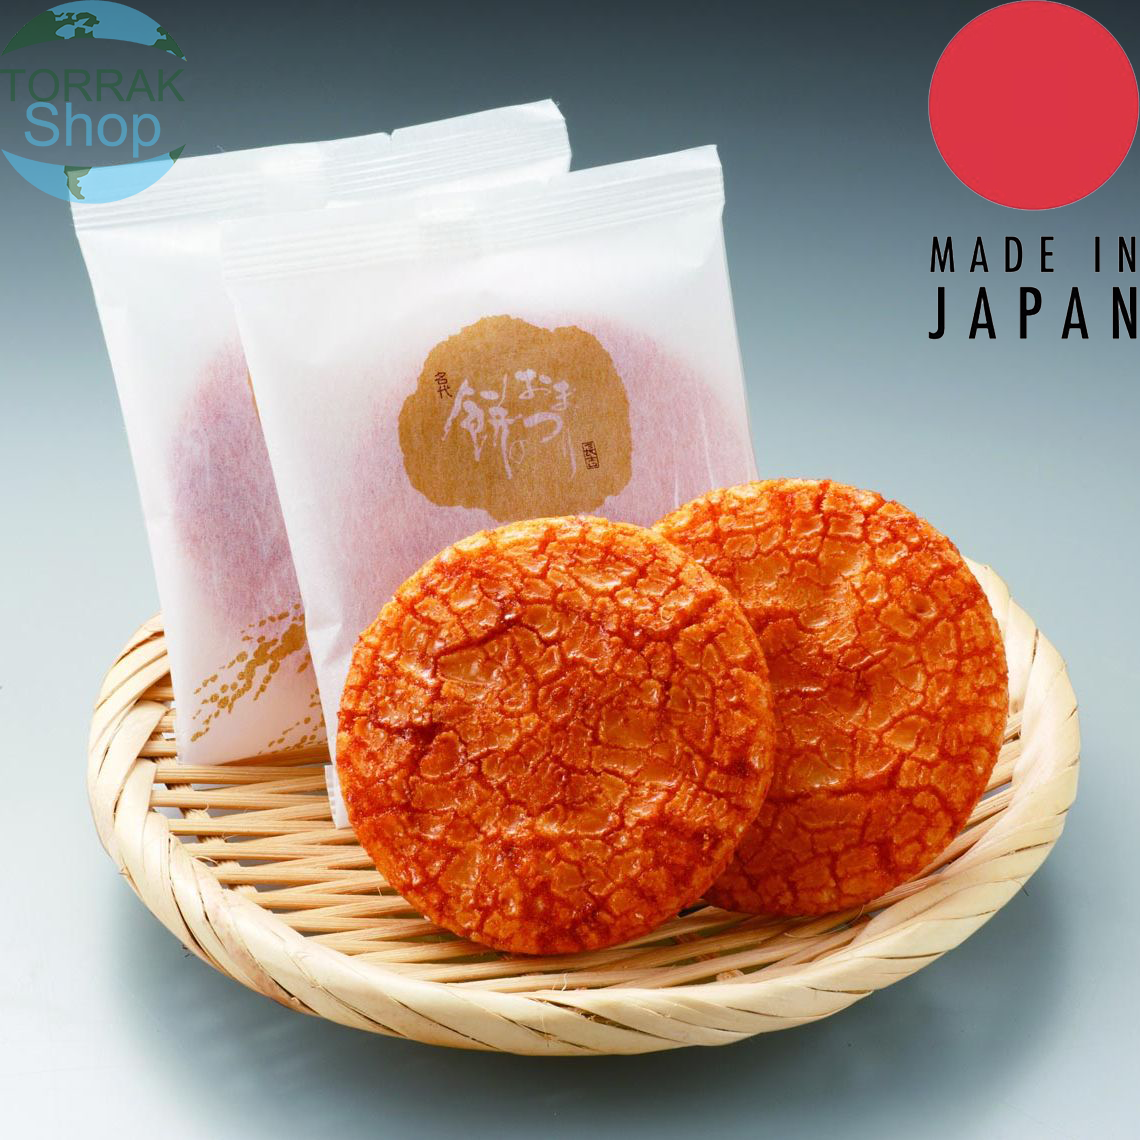 MOCHIKICHI Premium Shoyu Rice Cracker ขนม เซนเบ้ญี่ปุ่น รสโชยุ 18ชิ้น 250กรัม